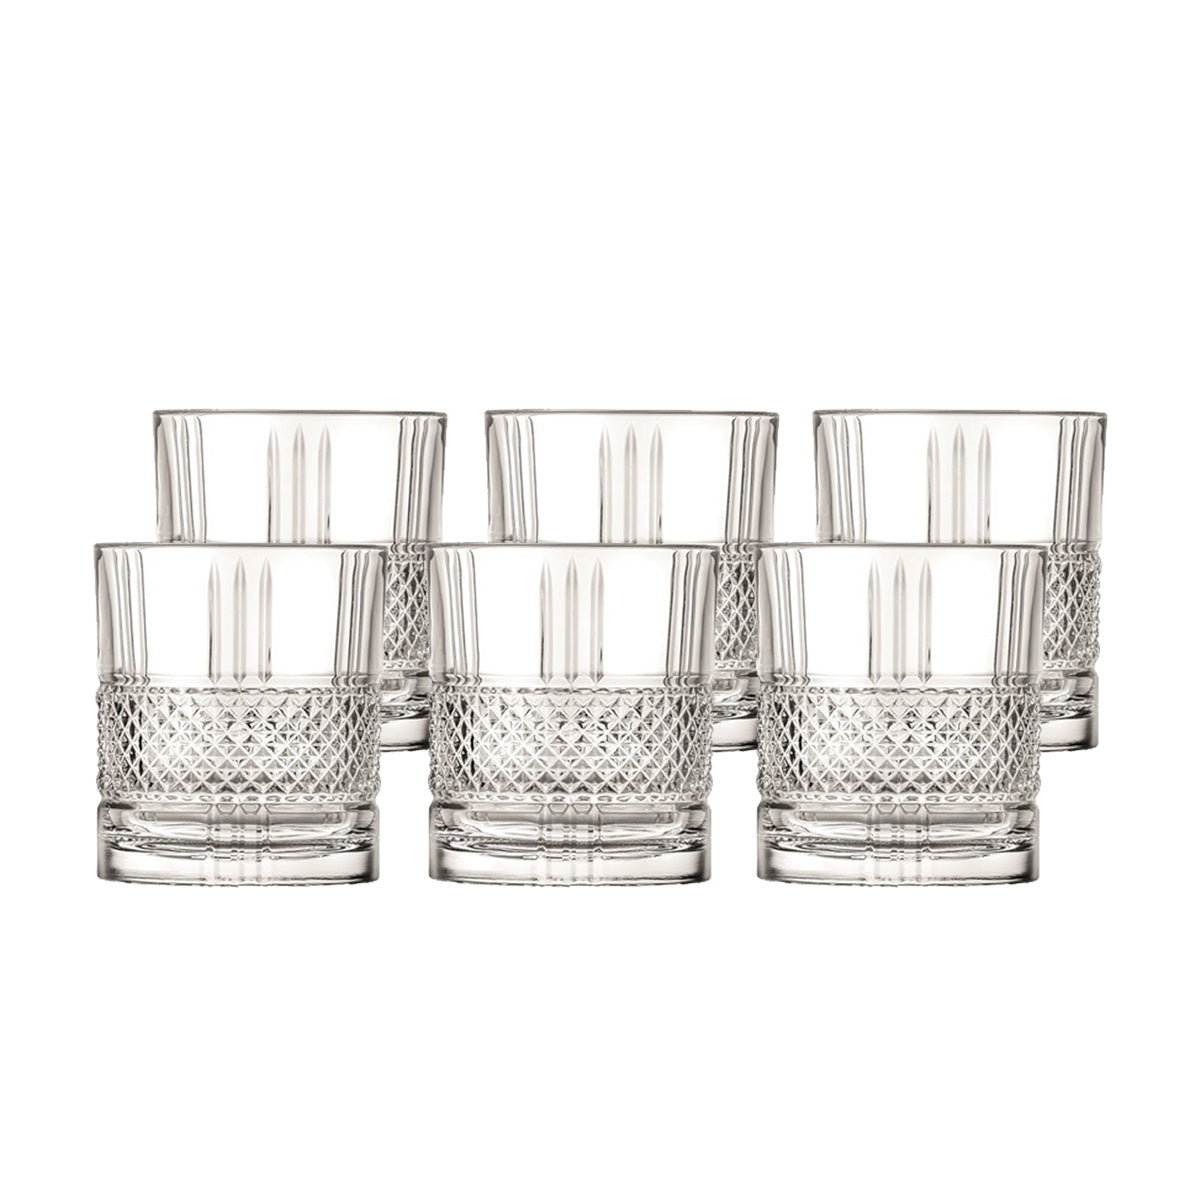 Whiskybecher Trinkglas Becher Brillante 6er Set 340ml